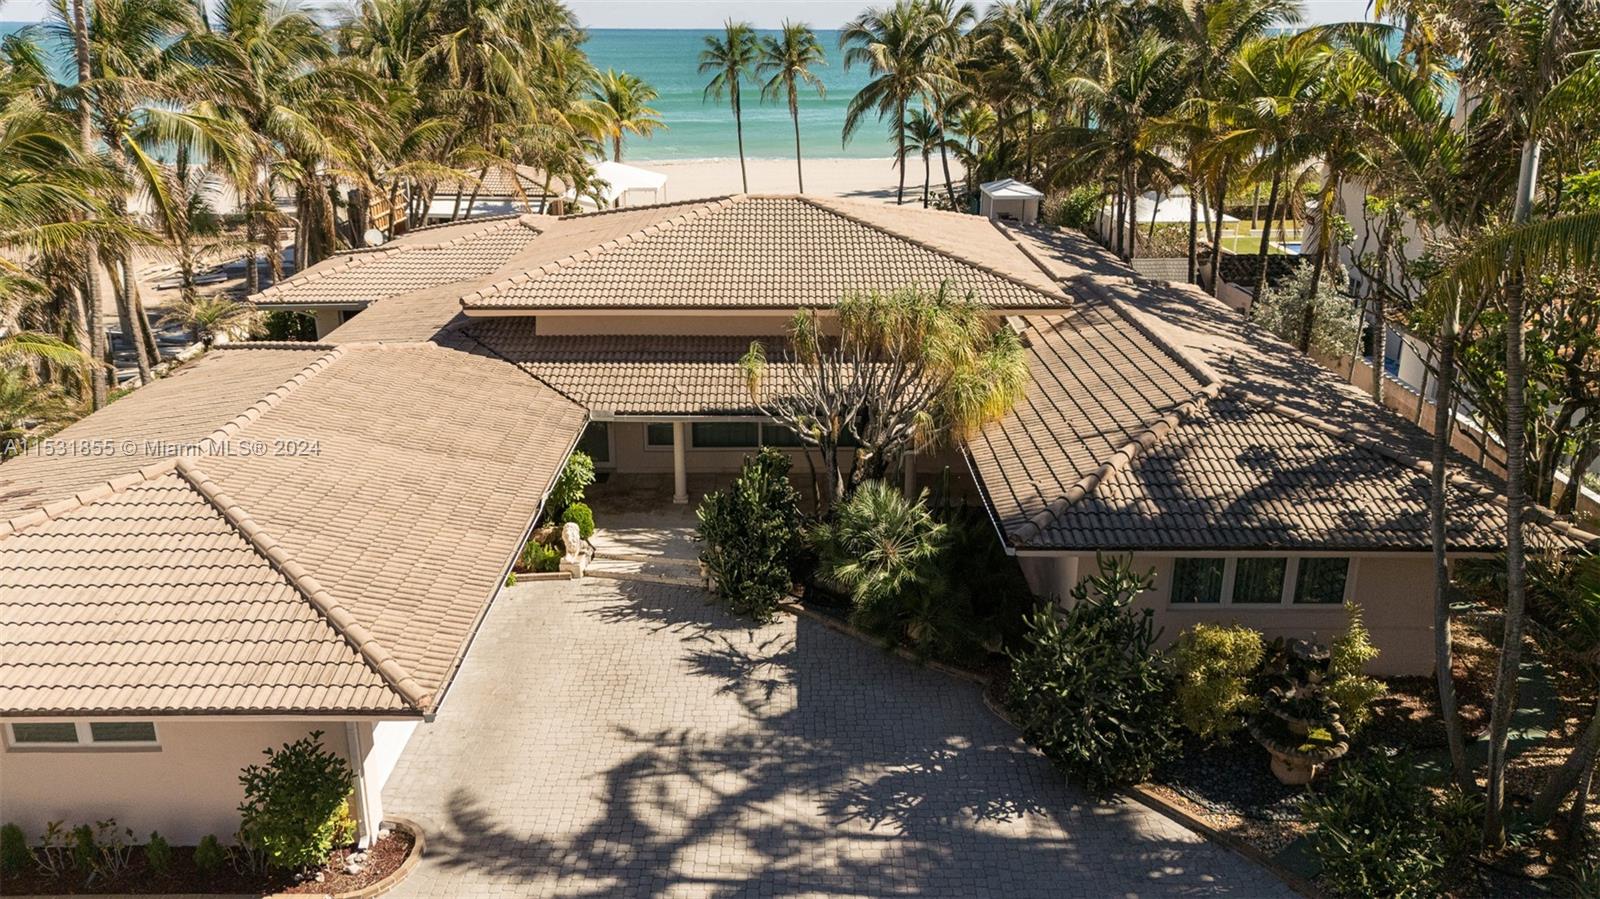 Rental Property at 205 Ocean Blvd Blvd, Golden Beach, Miami-Dade County, Florida - Bedrooms: 4 
Bathrooms: 5  - $55,000 MO.